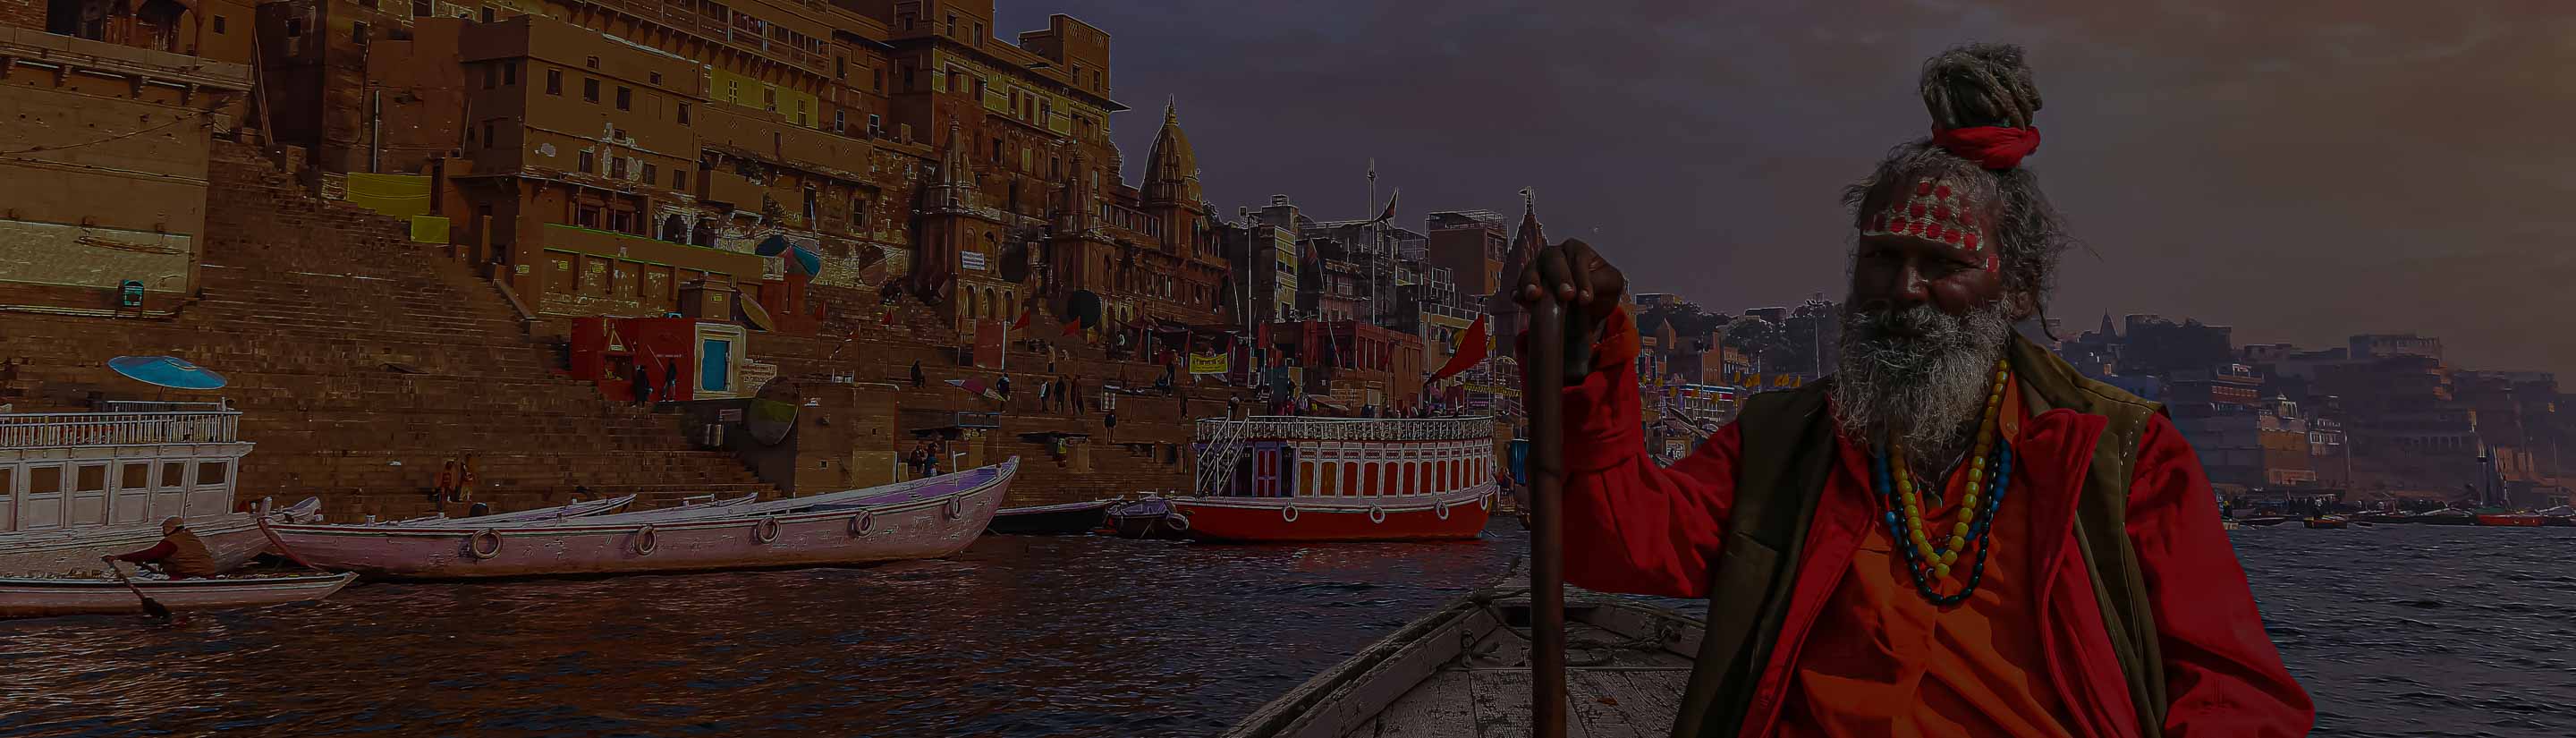 Sadhu auf Boot auf dem Ganges in Varanasi Indien